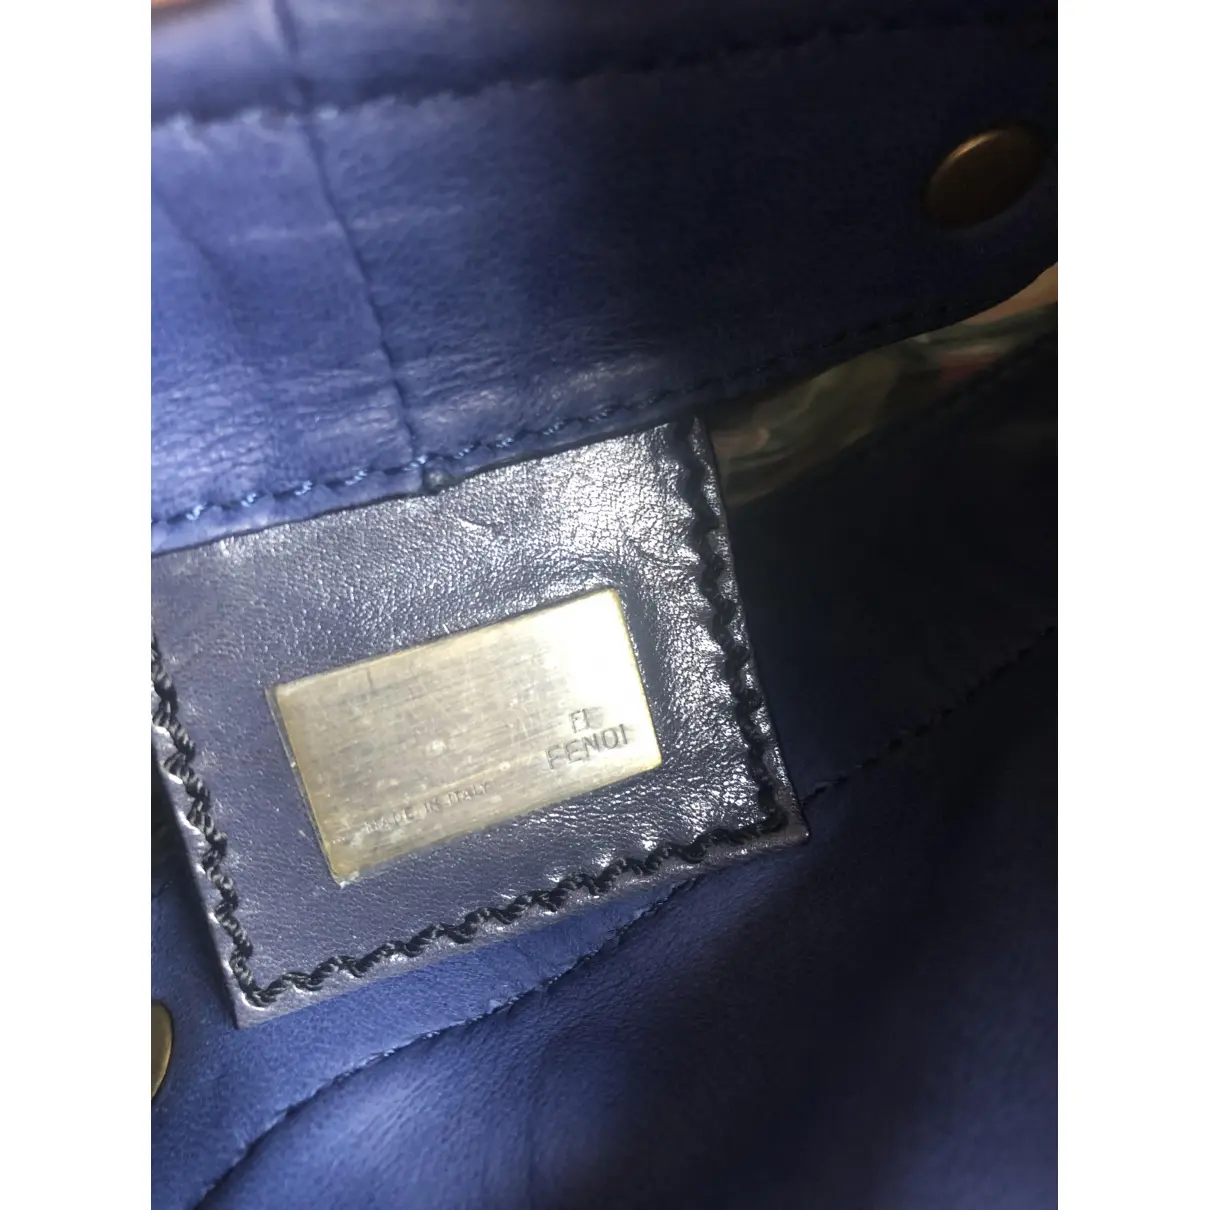 Buy Fendi Palazzo Bucket leather handbag online